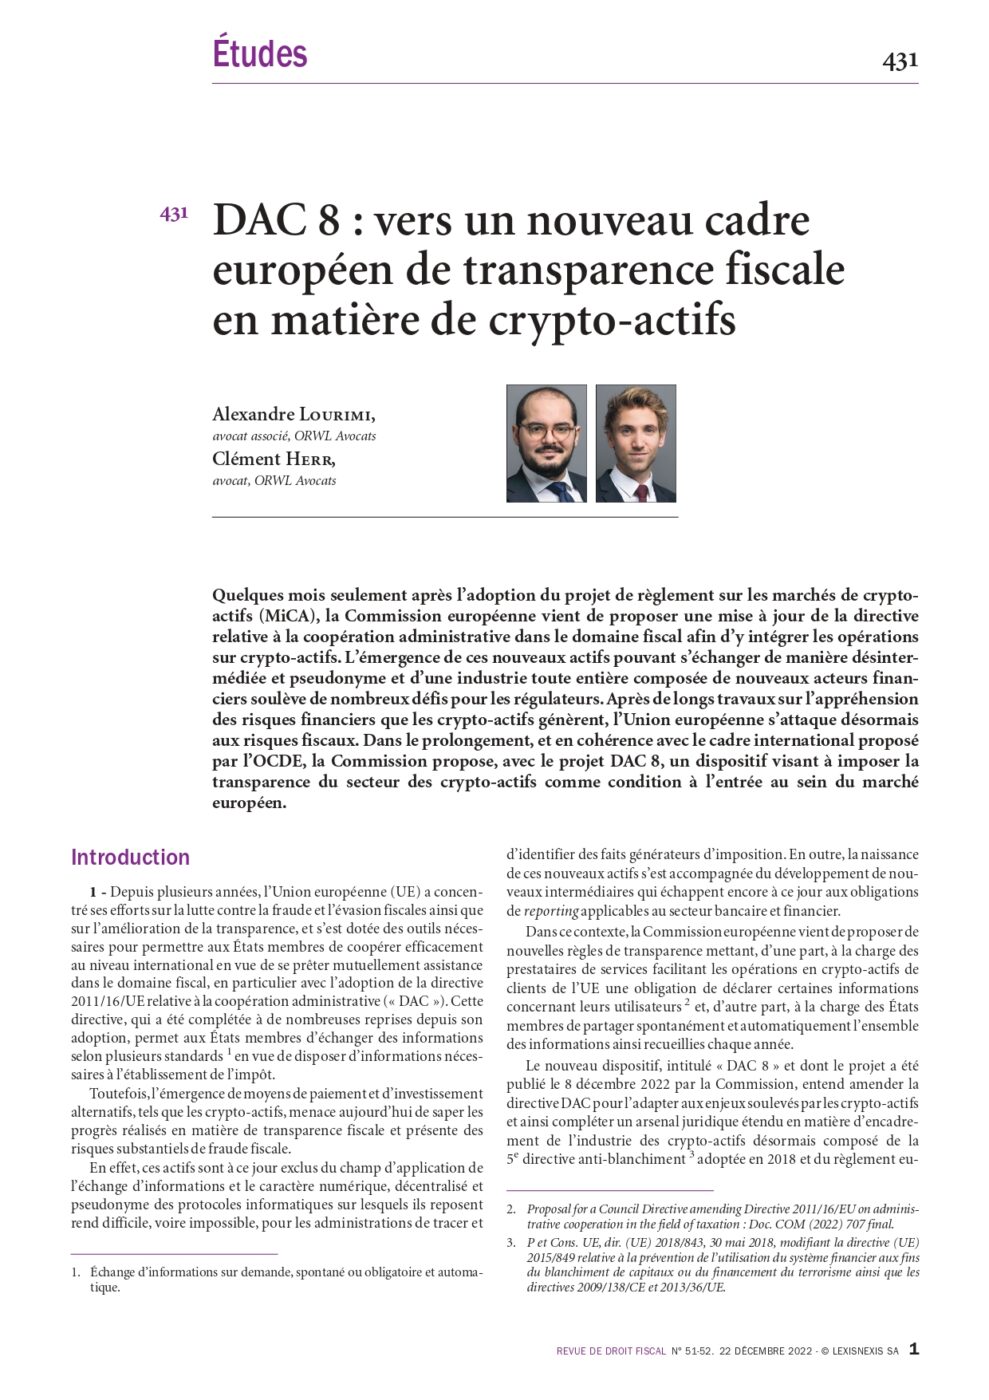 DAC 8 : vers un nouveau cadre européen de transparence fiscale en matière de crypto-actifs 1/2